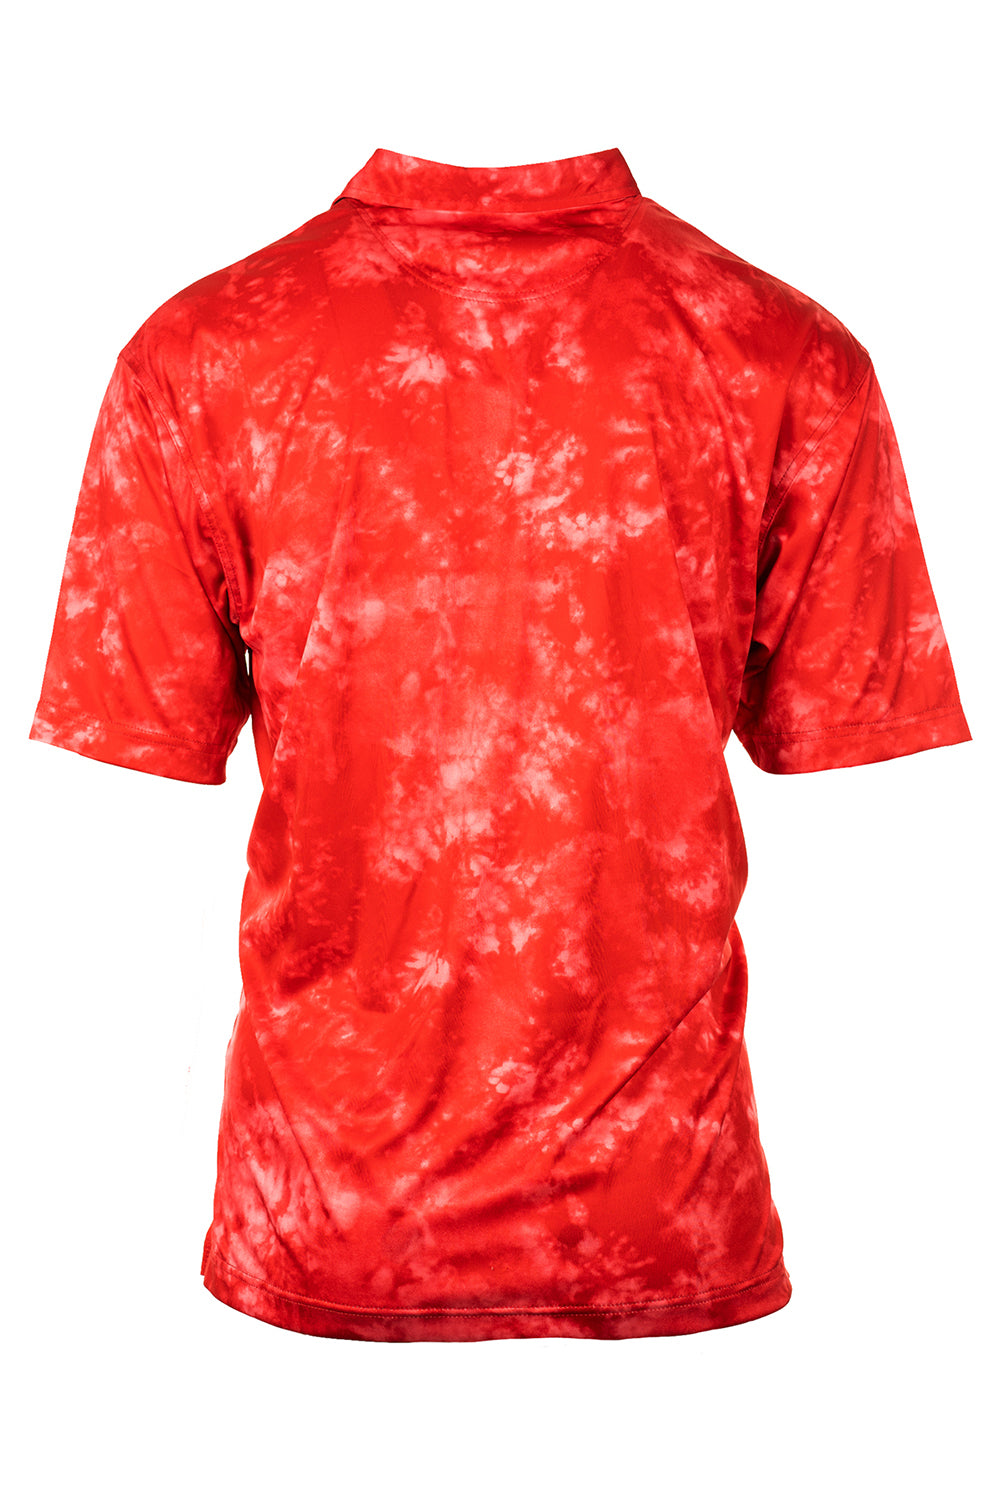 Burnside B0101 Mens Burn Moisture Wicking Short Sleeve Polo Shirt Red Tie Dye Flat Back